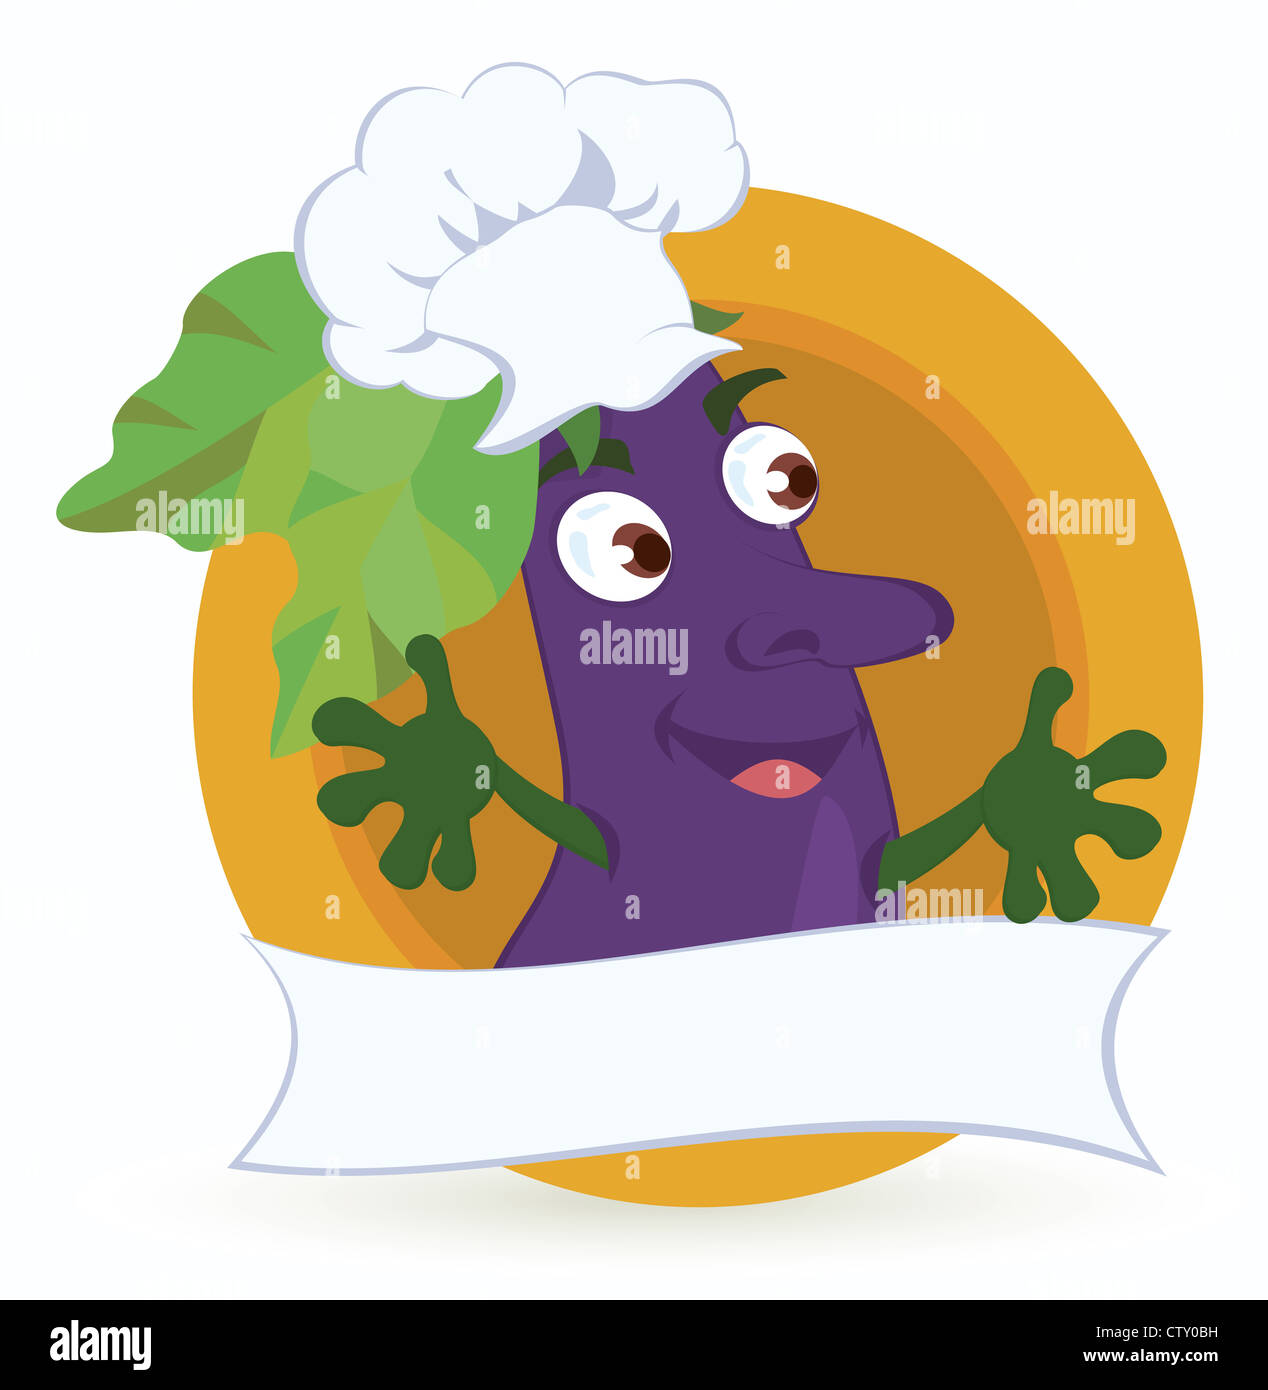 Personnage de l'aubergine avec ruban promo vector illustration Banque D'Images